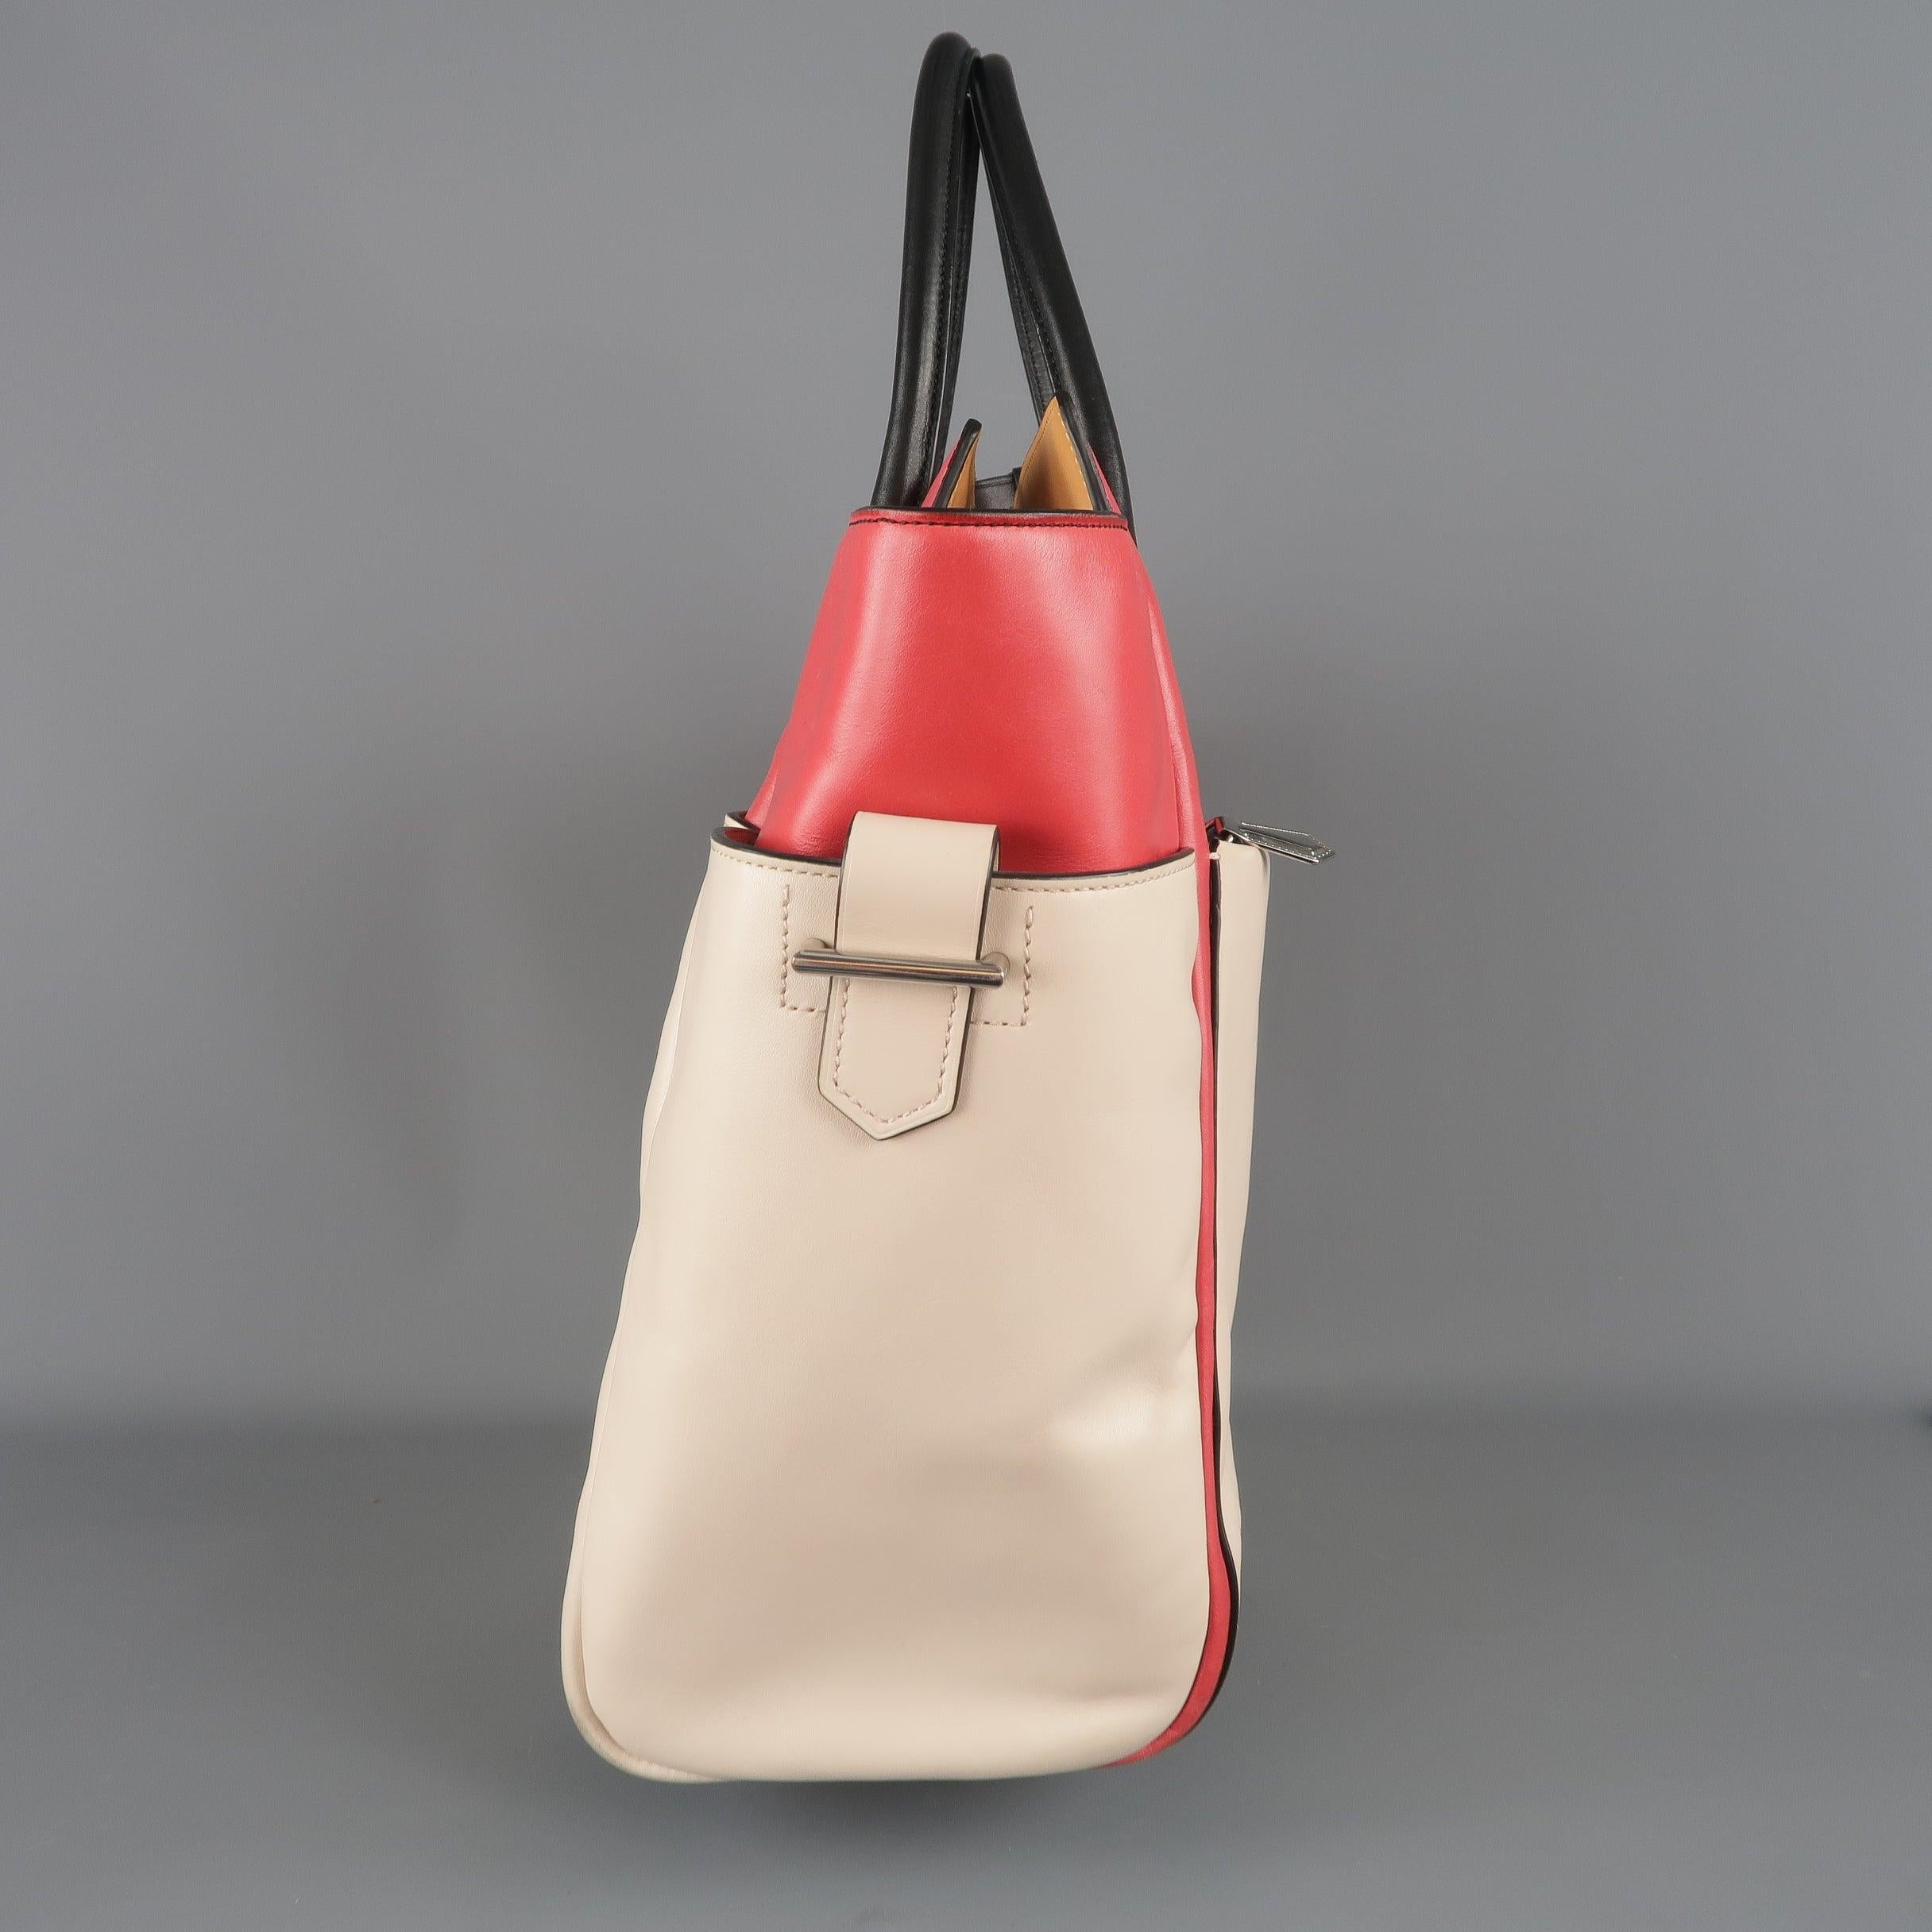 REED KRAKOFF Red Black & Light Pink Leather Tote Handbag For Sale 2